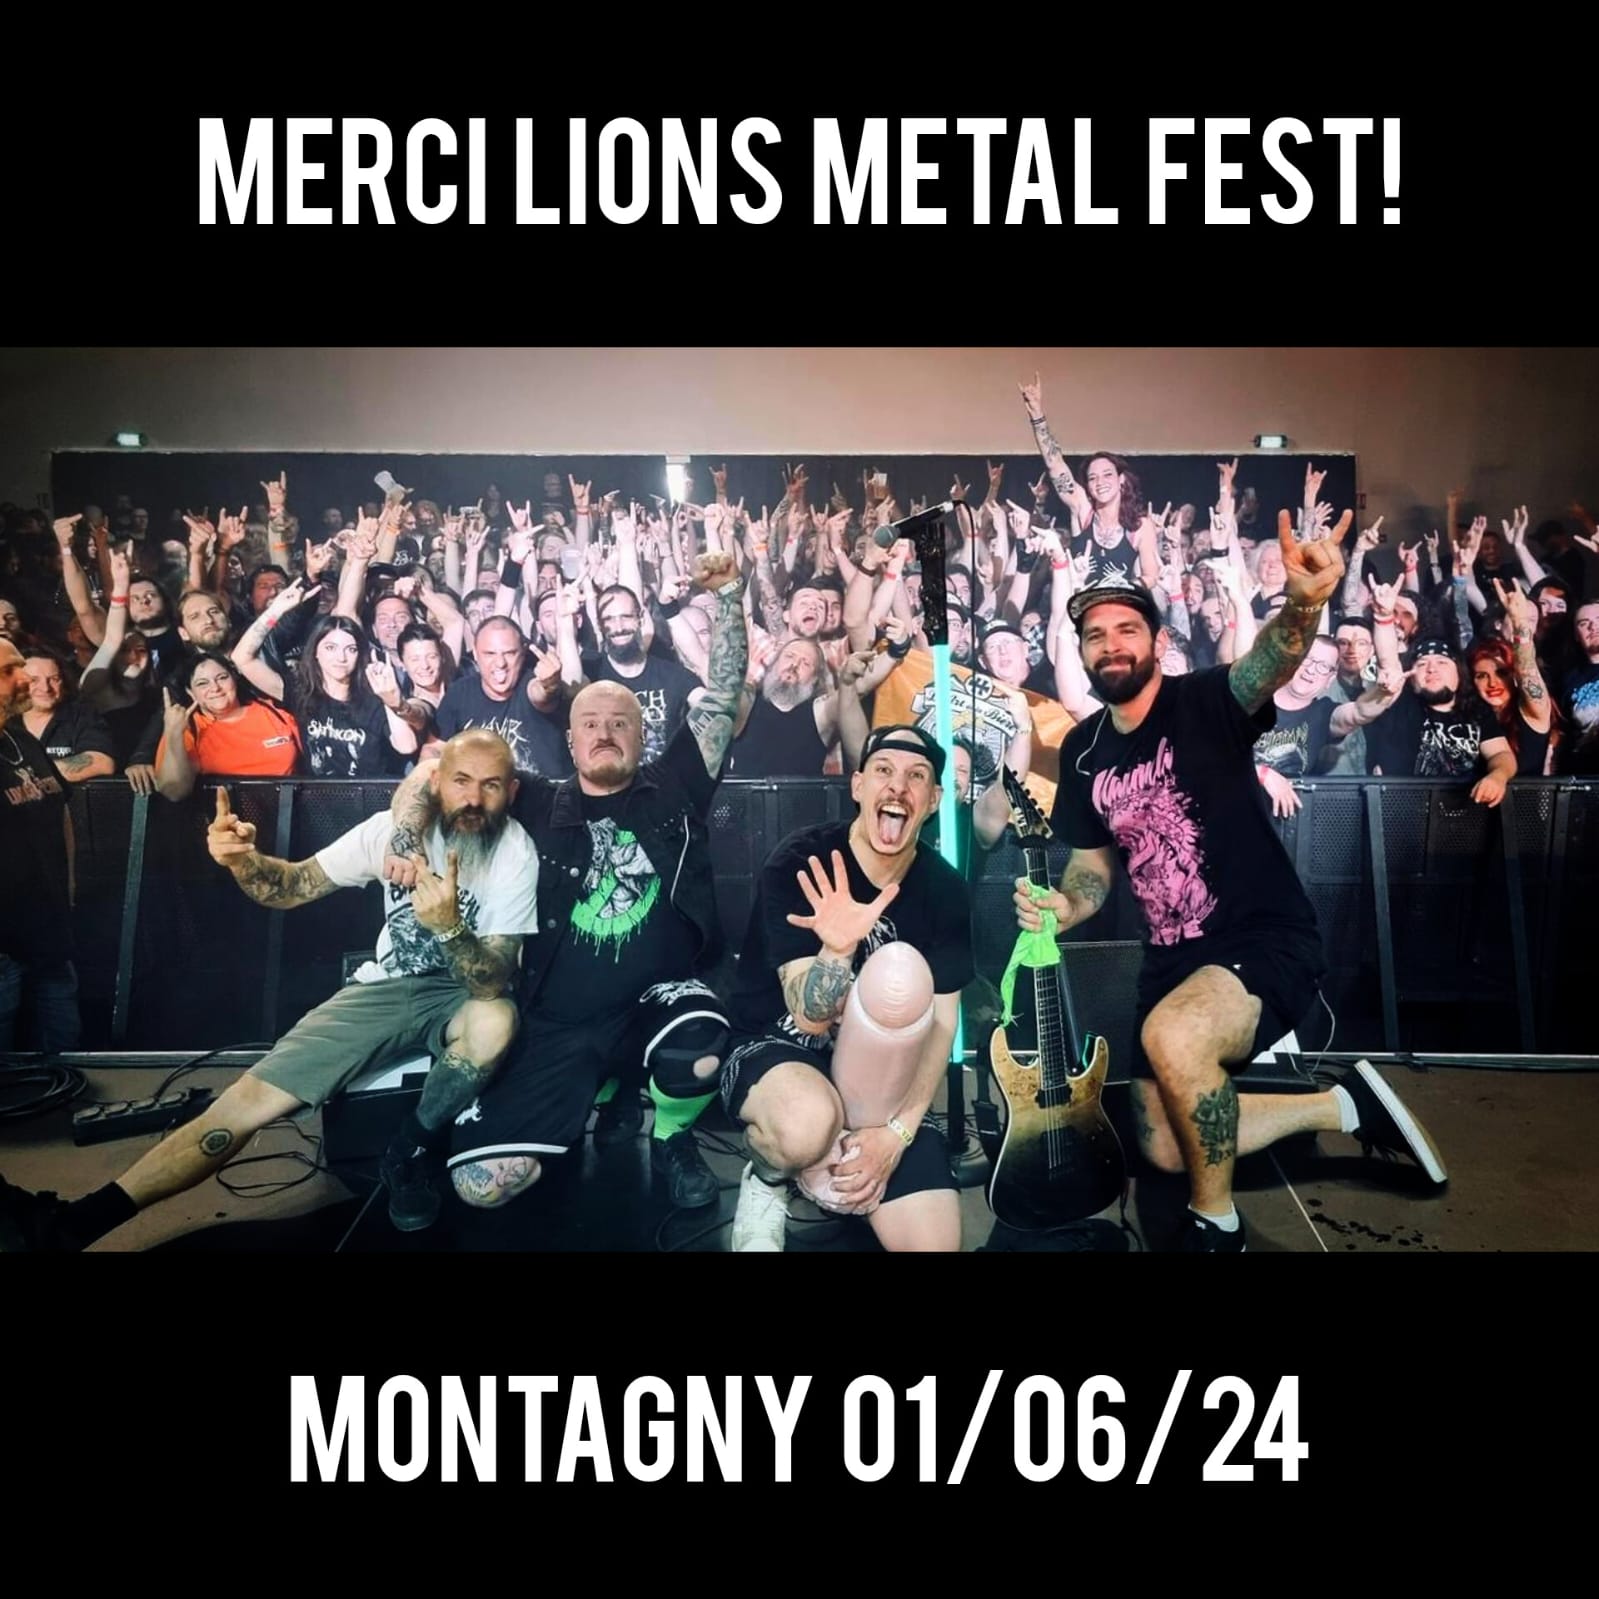 Lions Metal Fest